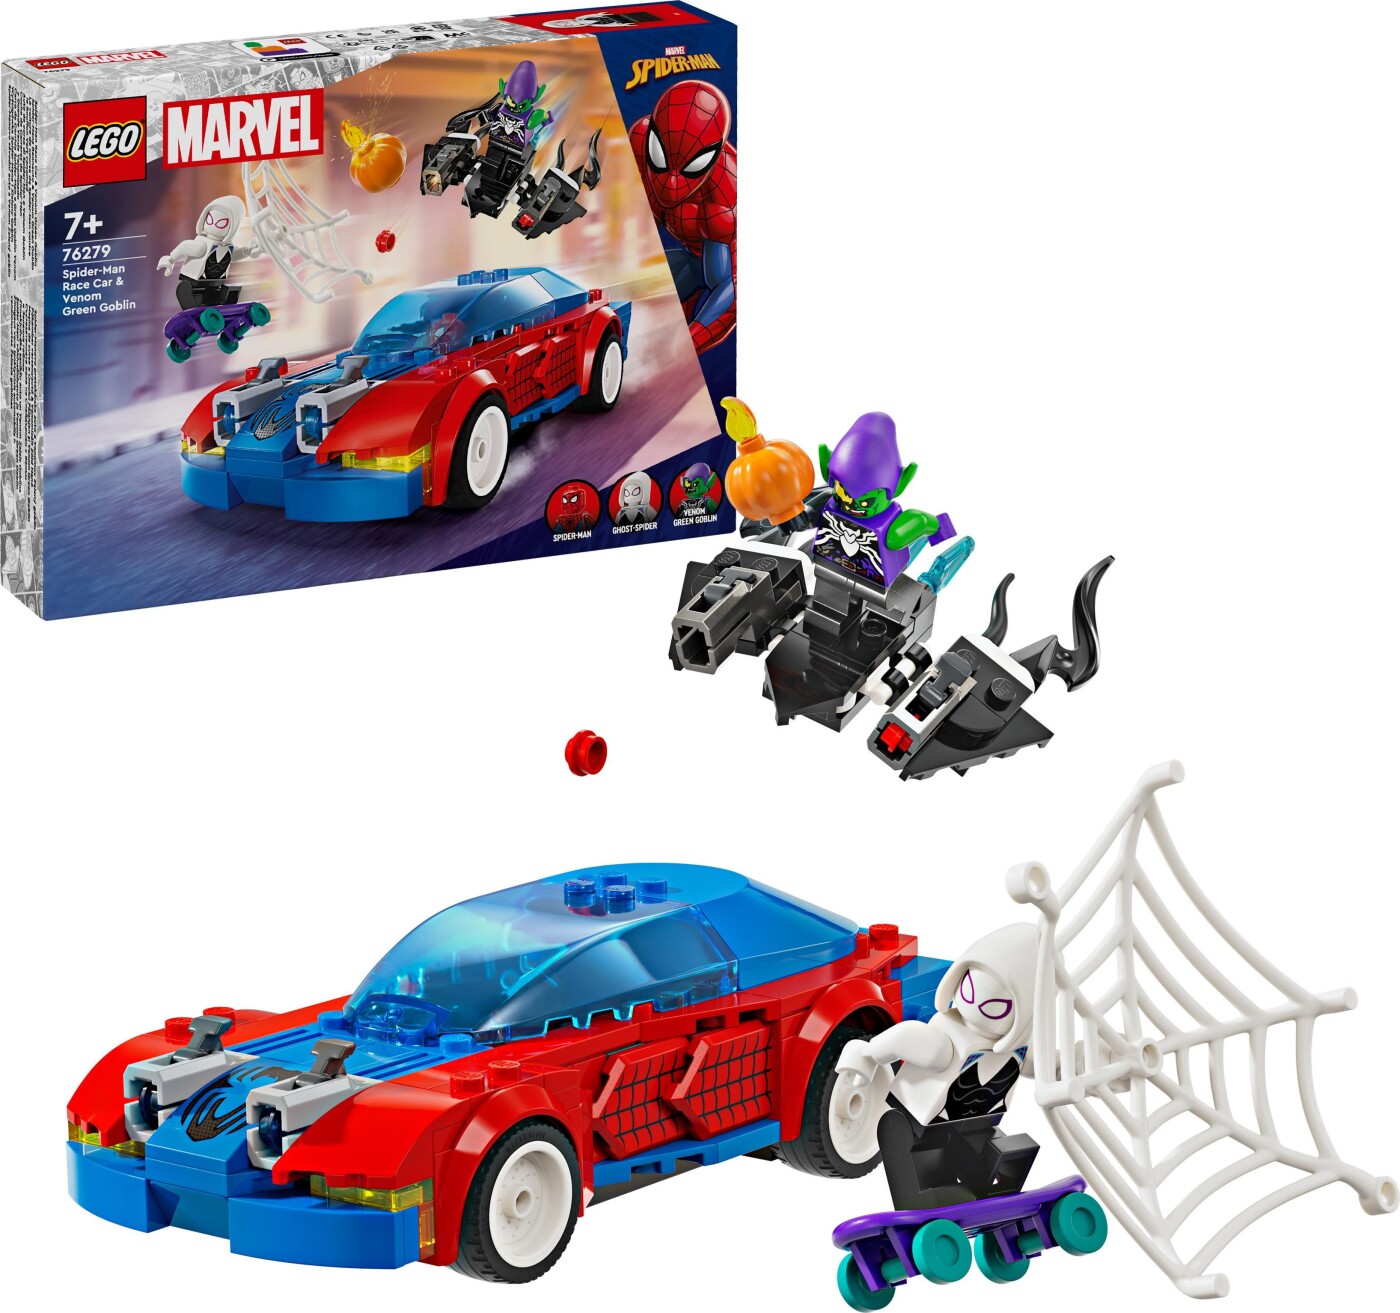 Billede af Lego Super Heroes - Spider-mans Racerbil Og Venom Green Goblin - 76279